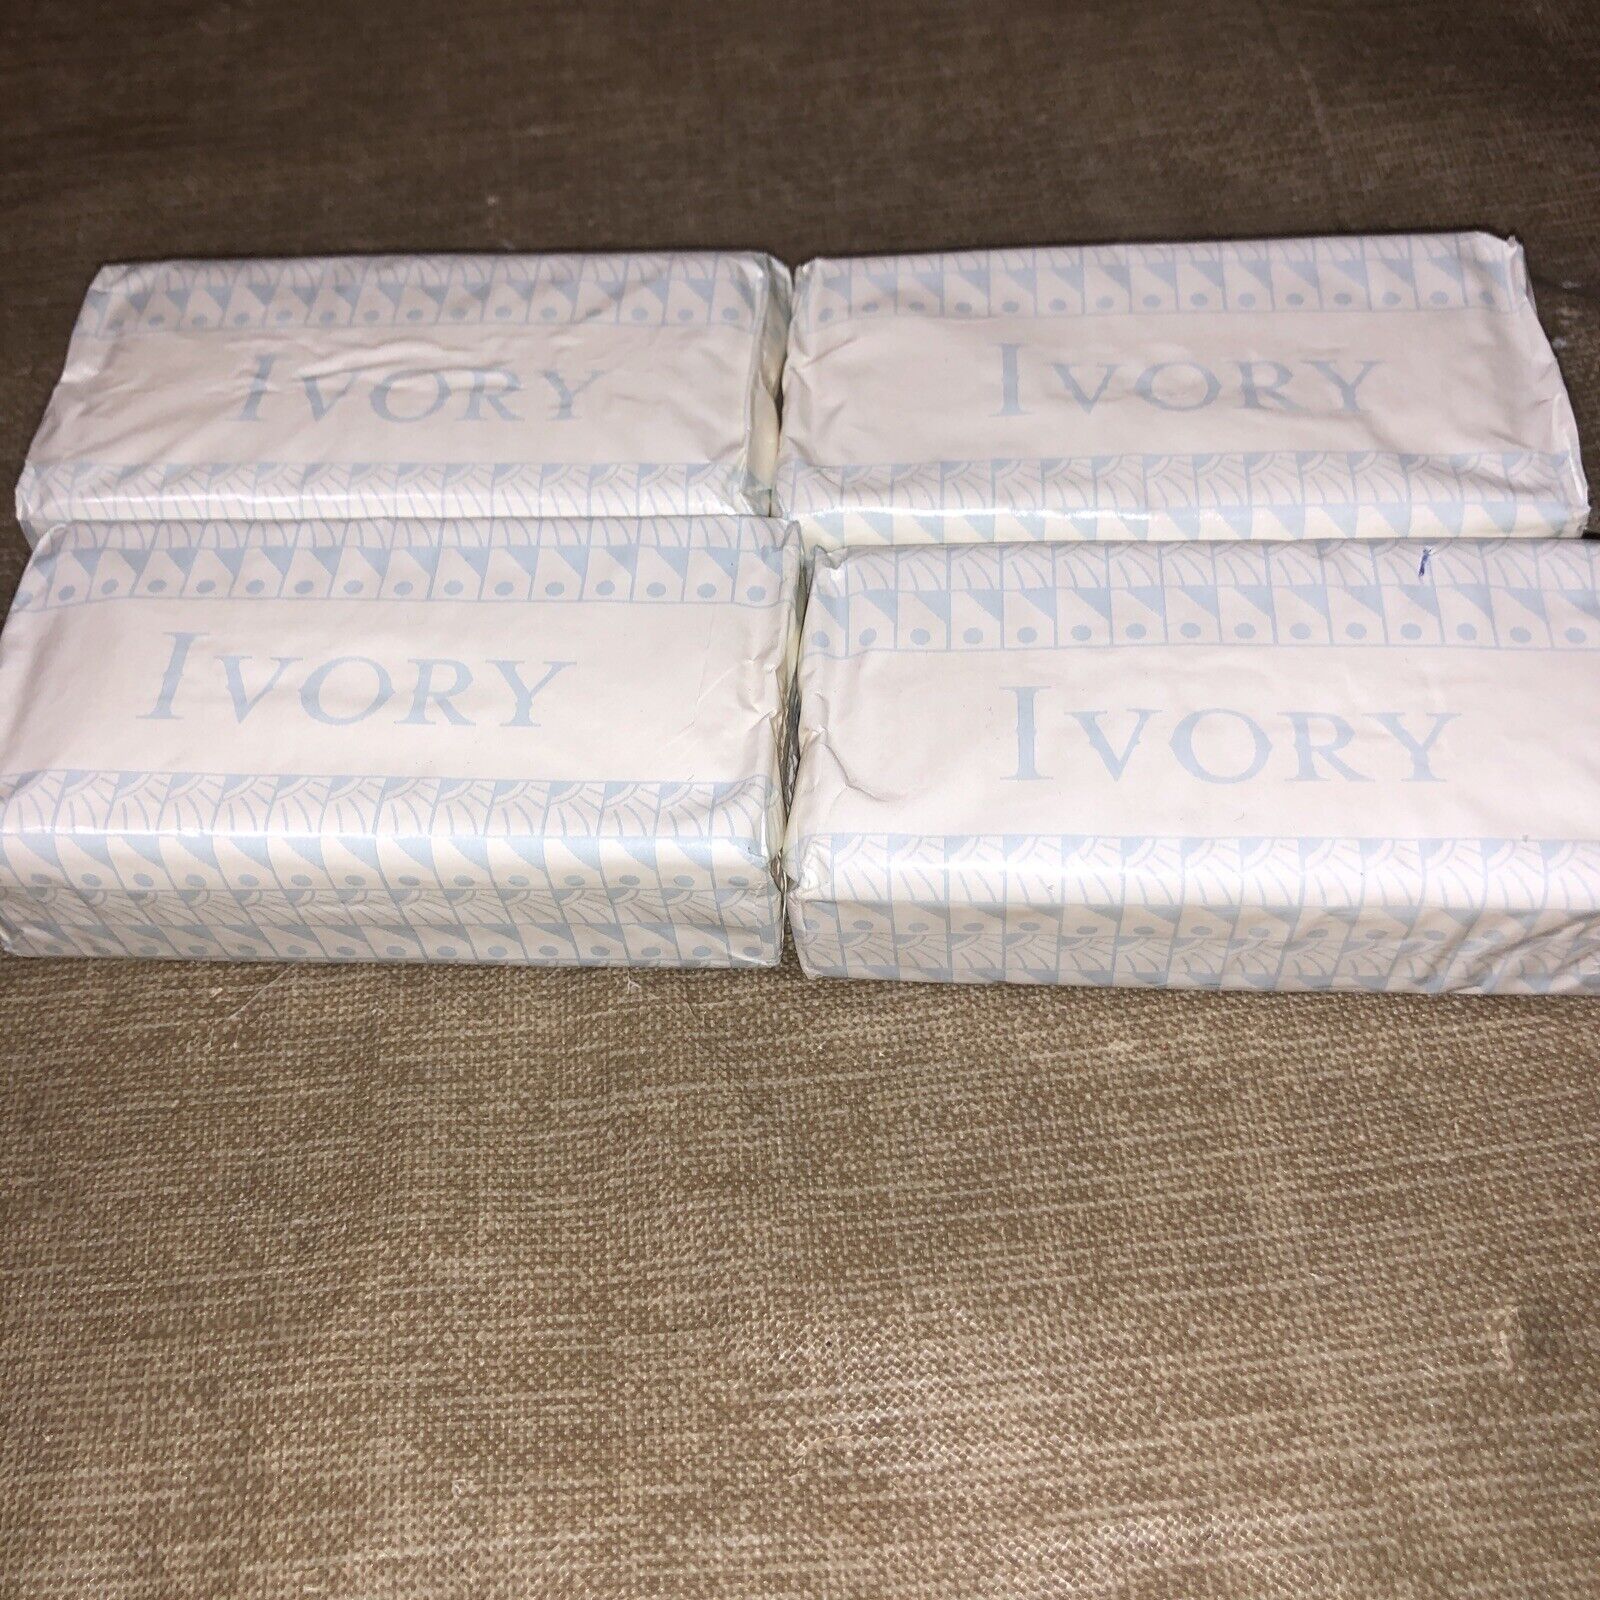 Vintage Ivory Soap (lot of 4) Long Bars Original Wrapper Sealed